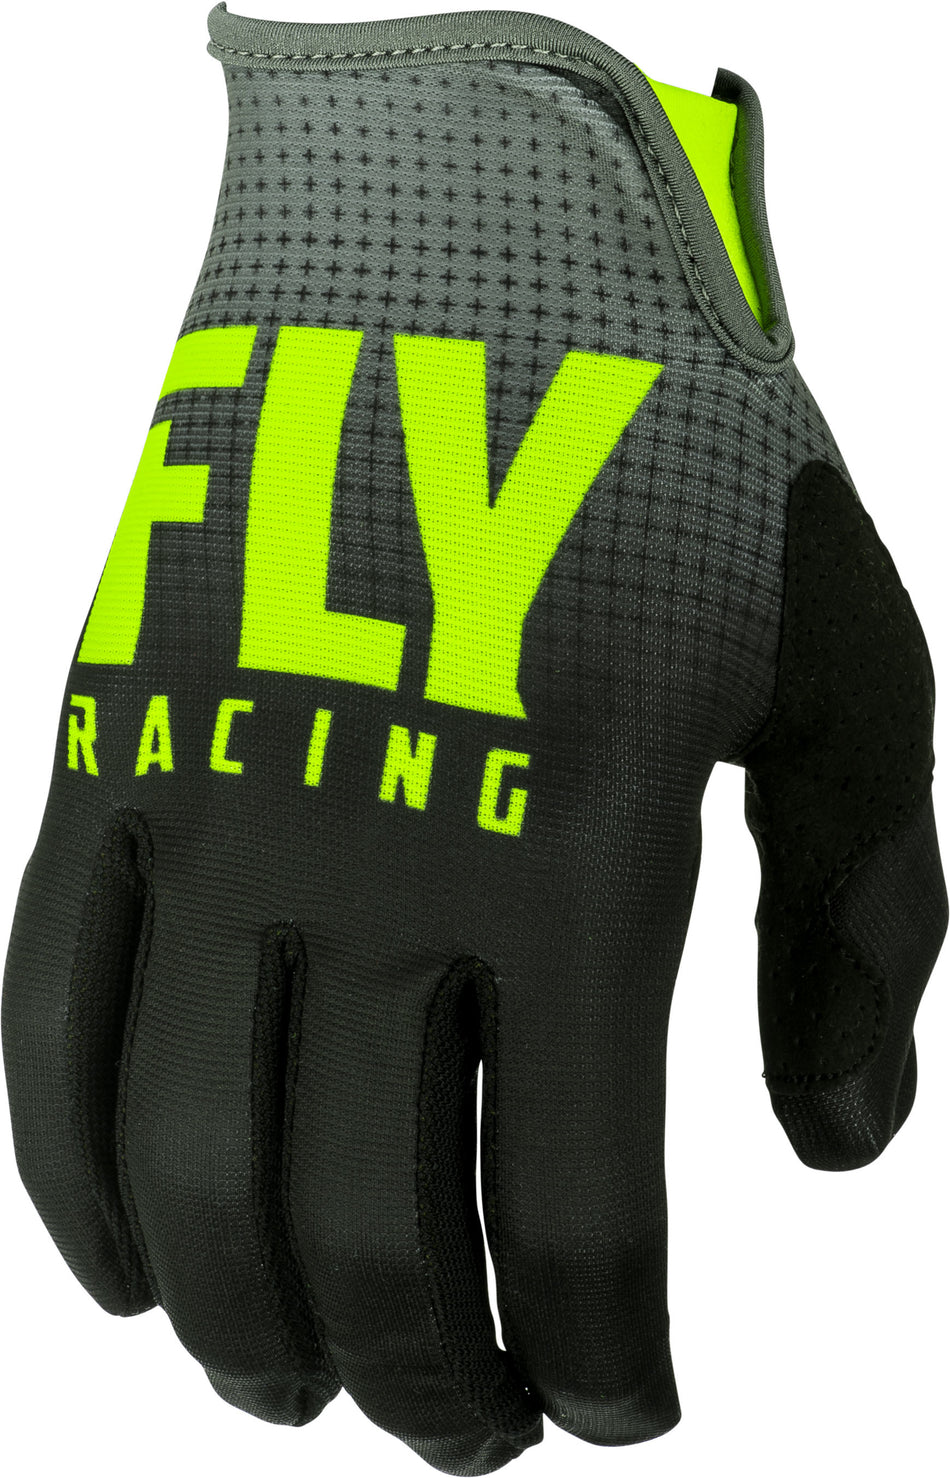 FLY RACING Lite Gloves Black/Hi-Vis Sz 09 372-01009